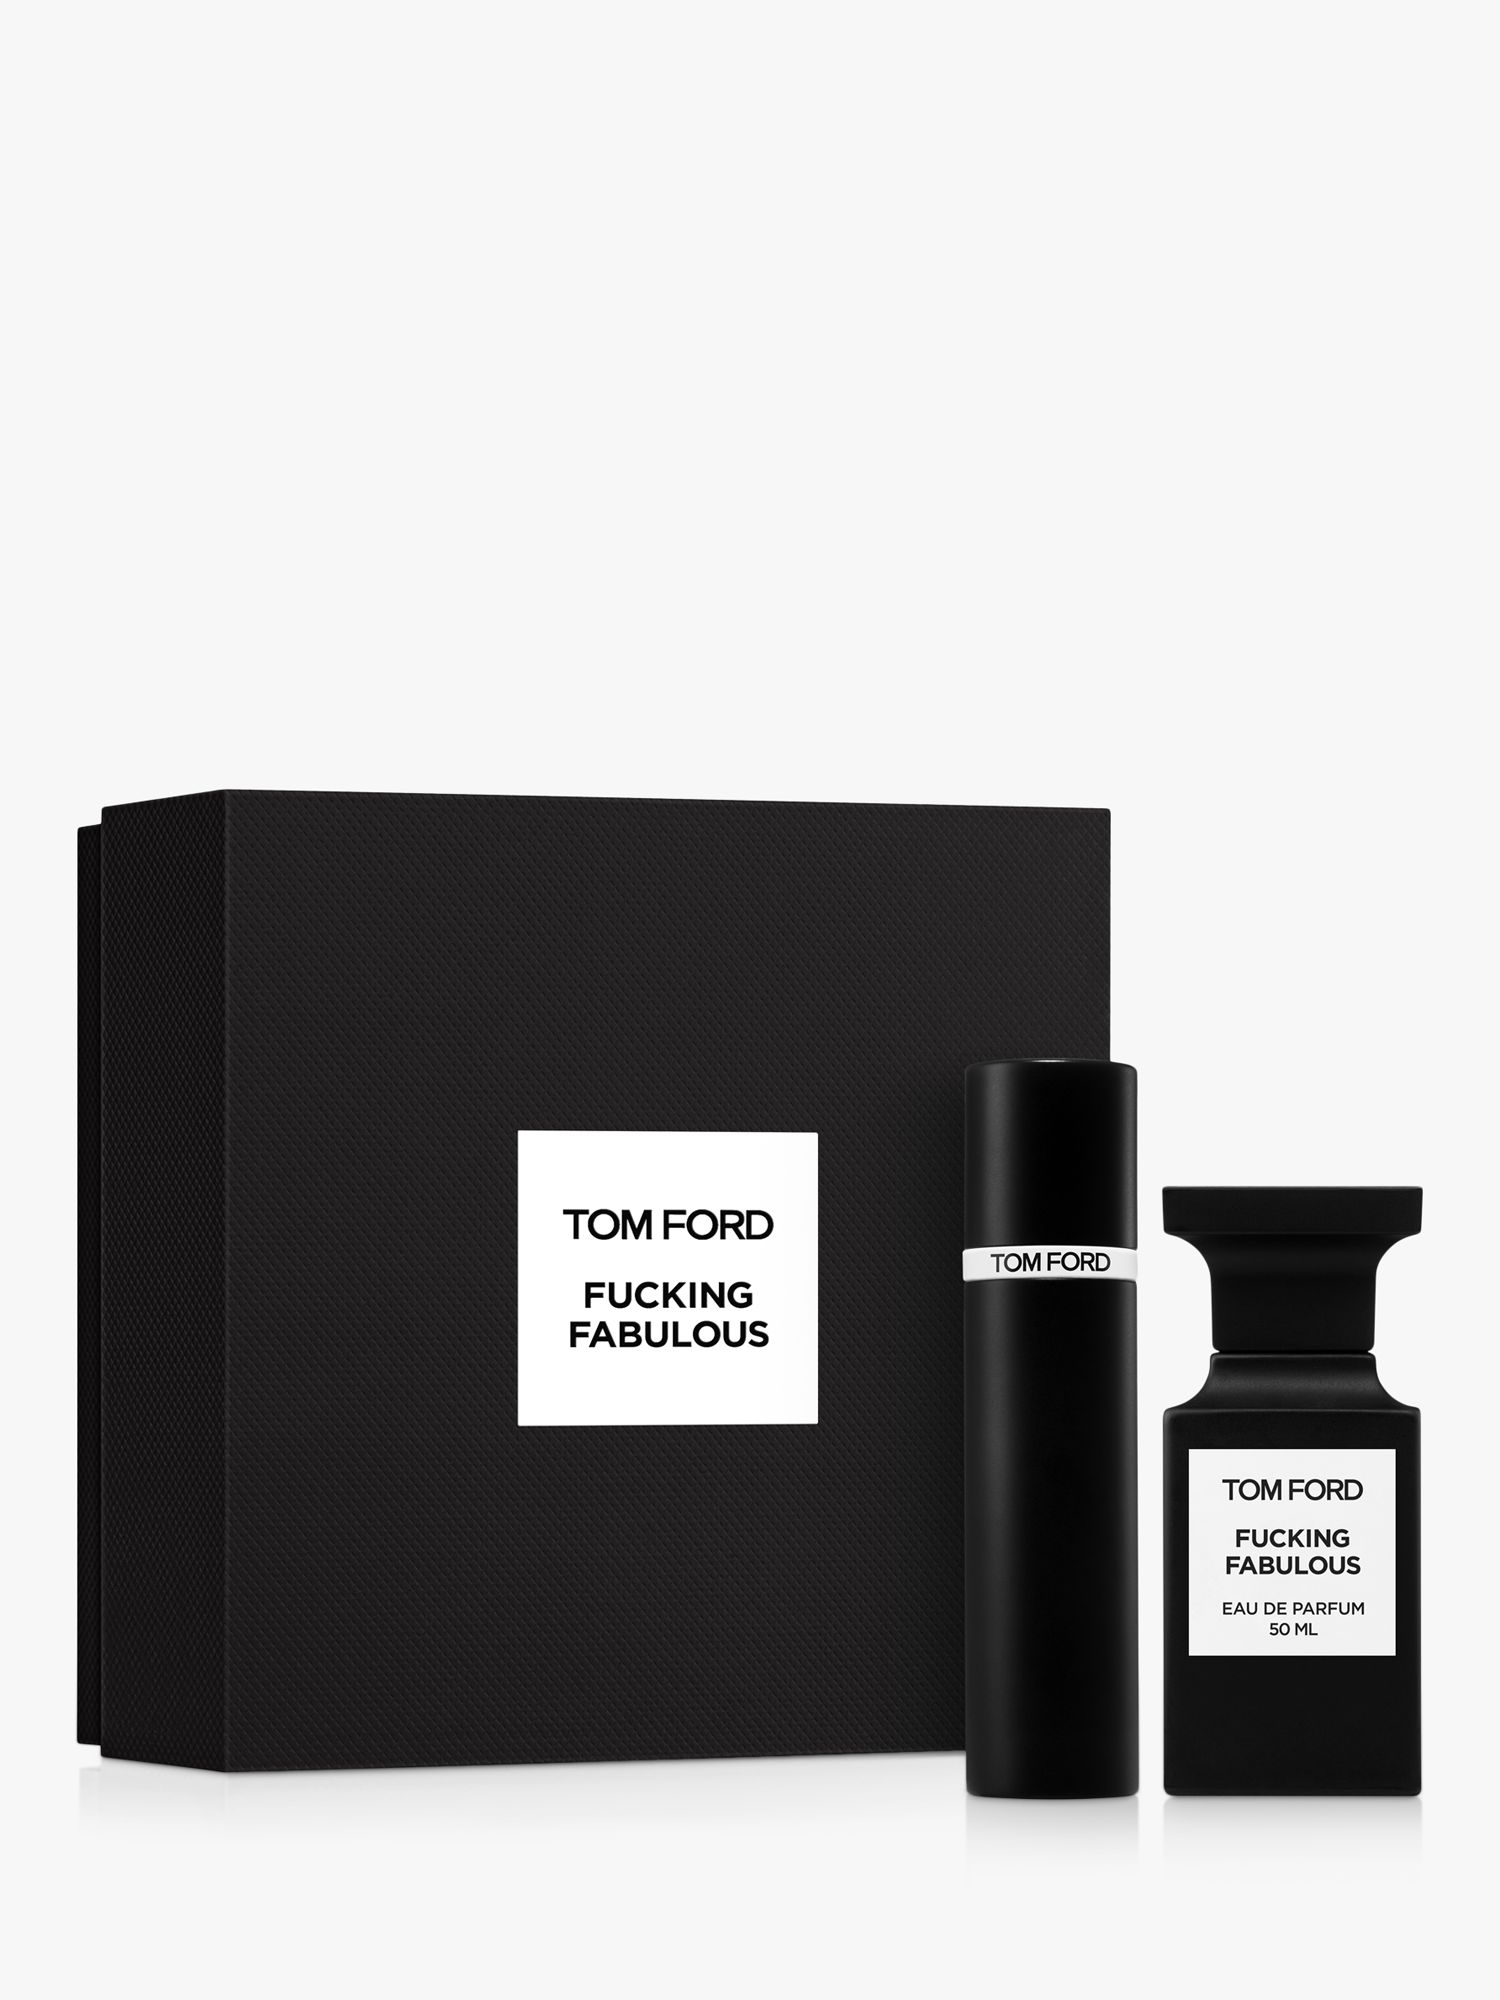 TOM FORD Private Blend Fabulous Eau de Parfum 50ml Fragrance Gift Set 1